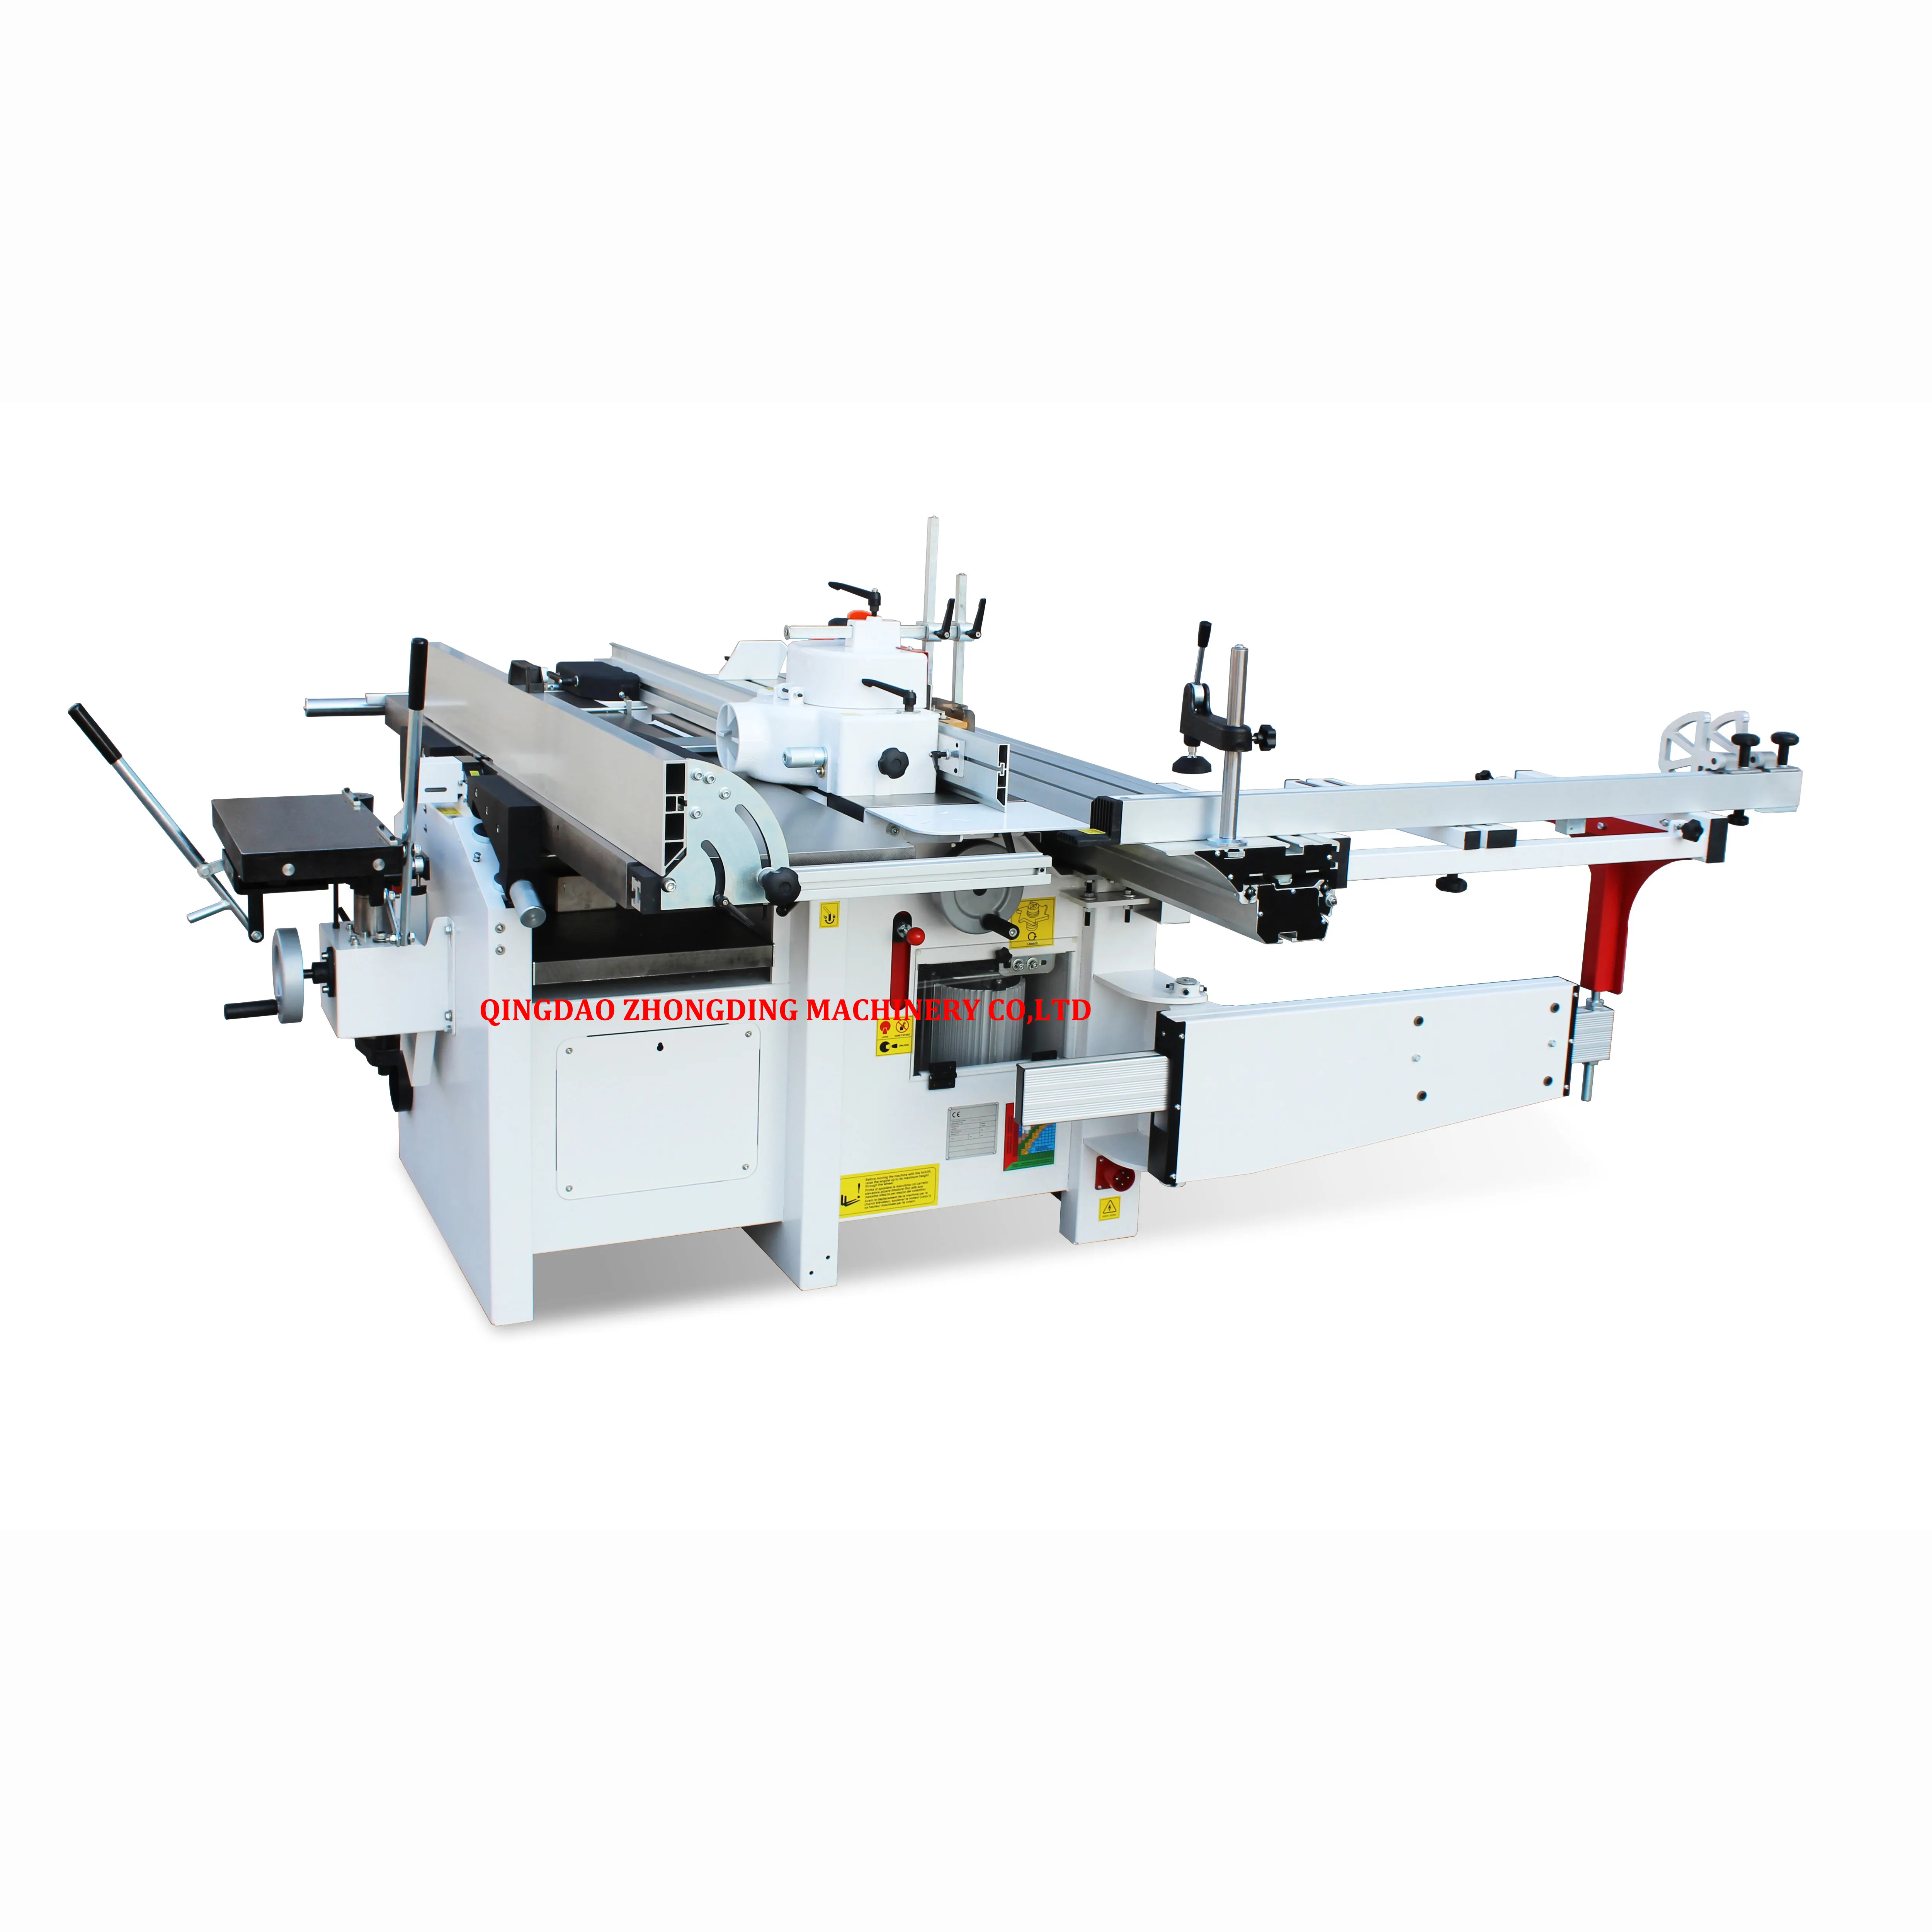 ماكينة نجارة مدمجة إيطالية C400, ماكينة نجارة مدمجة متعددة الاستخدامات ، ماكينة نجارة للبيع